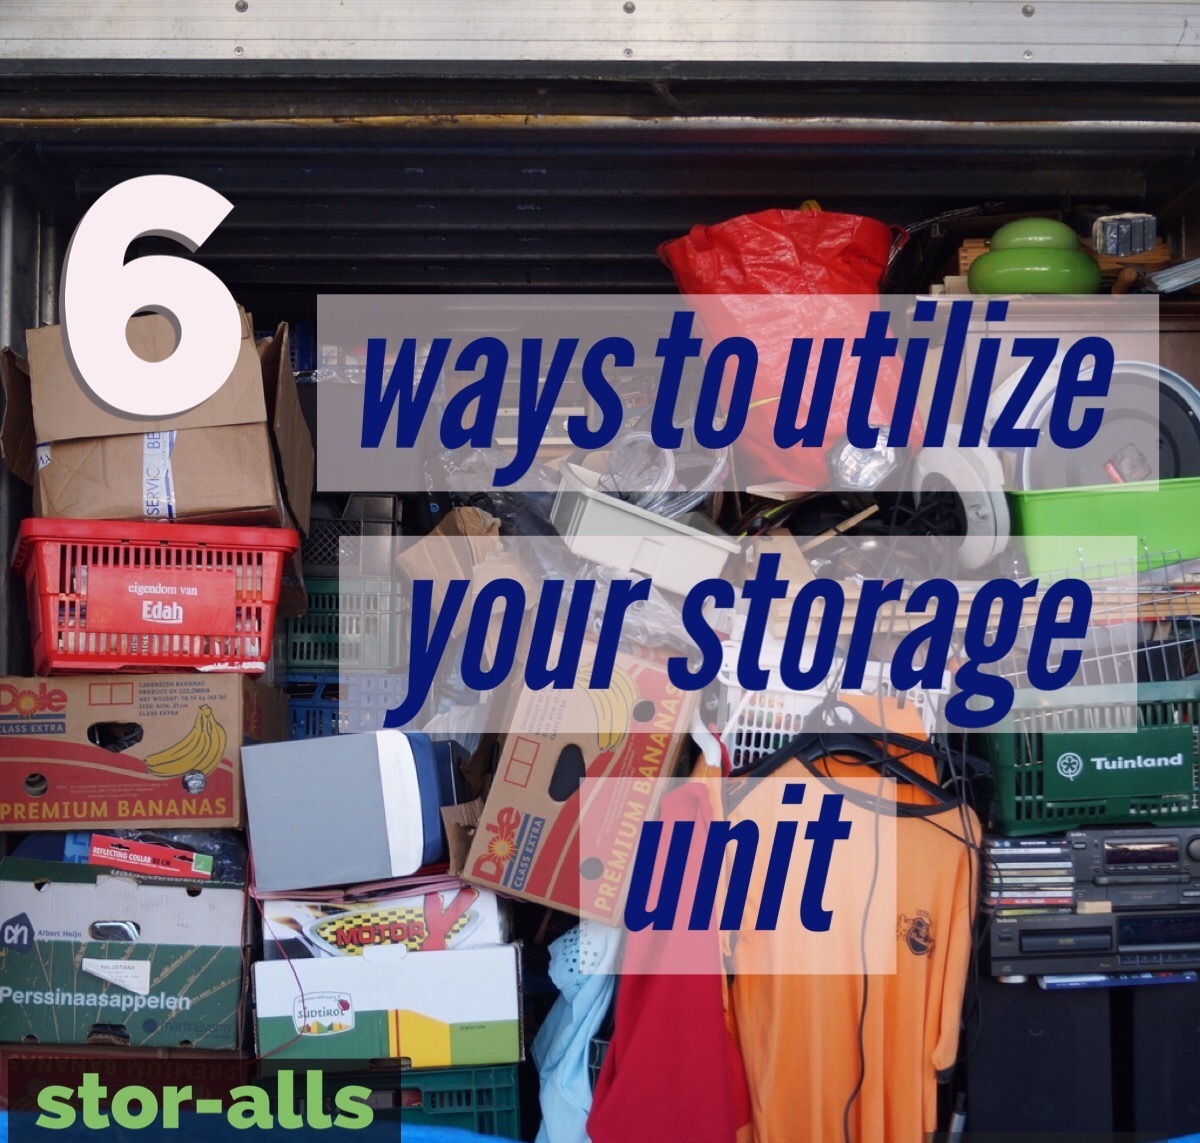 6 Ways to Utilize Your Storage Unit